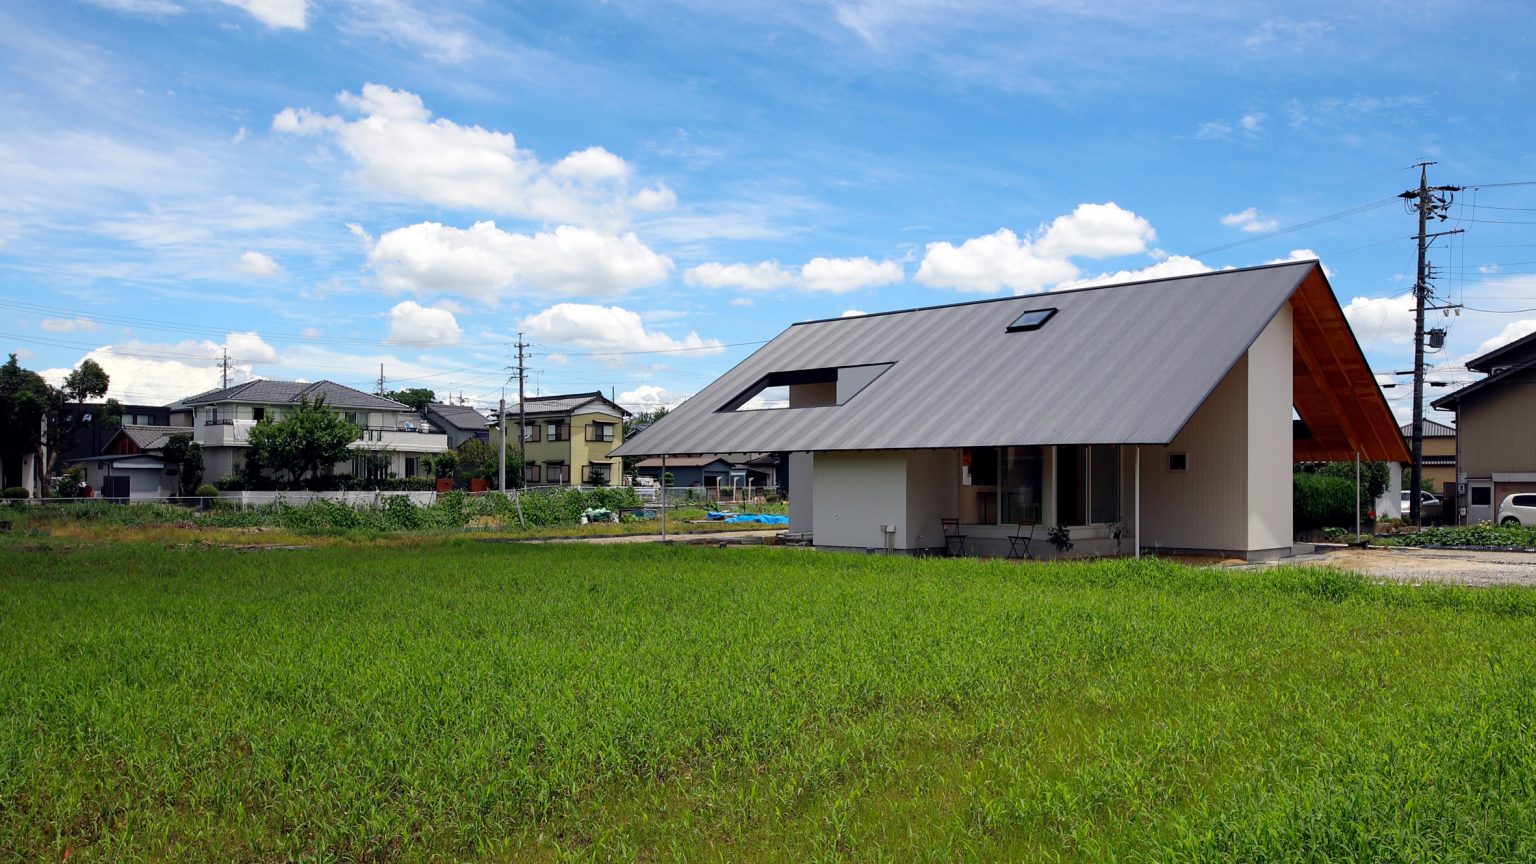 hình ảnh ngôi nhà hình chữ thập cạnh đồng lúa xanh mướt